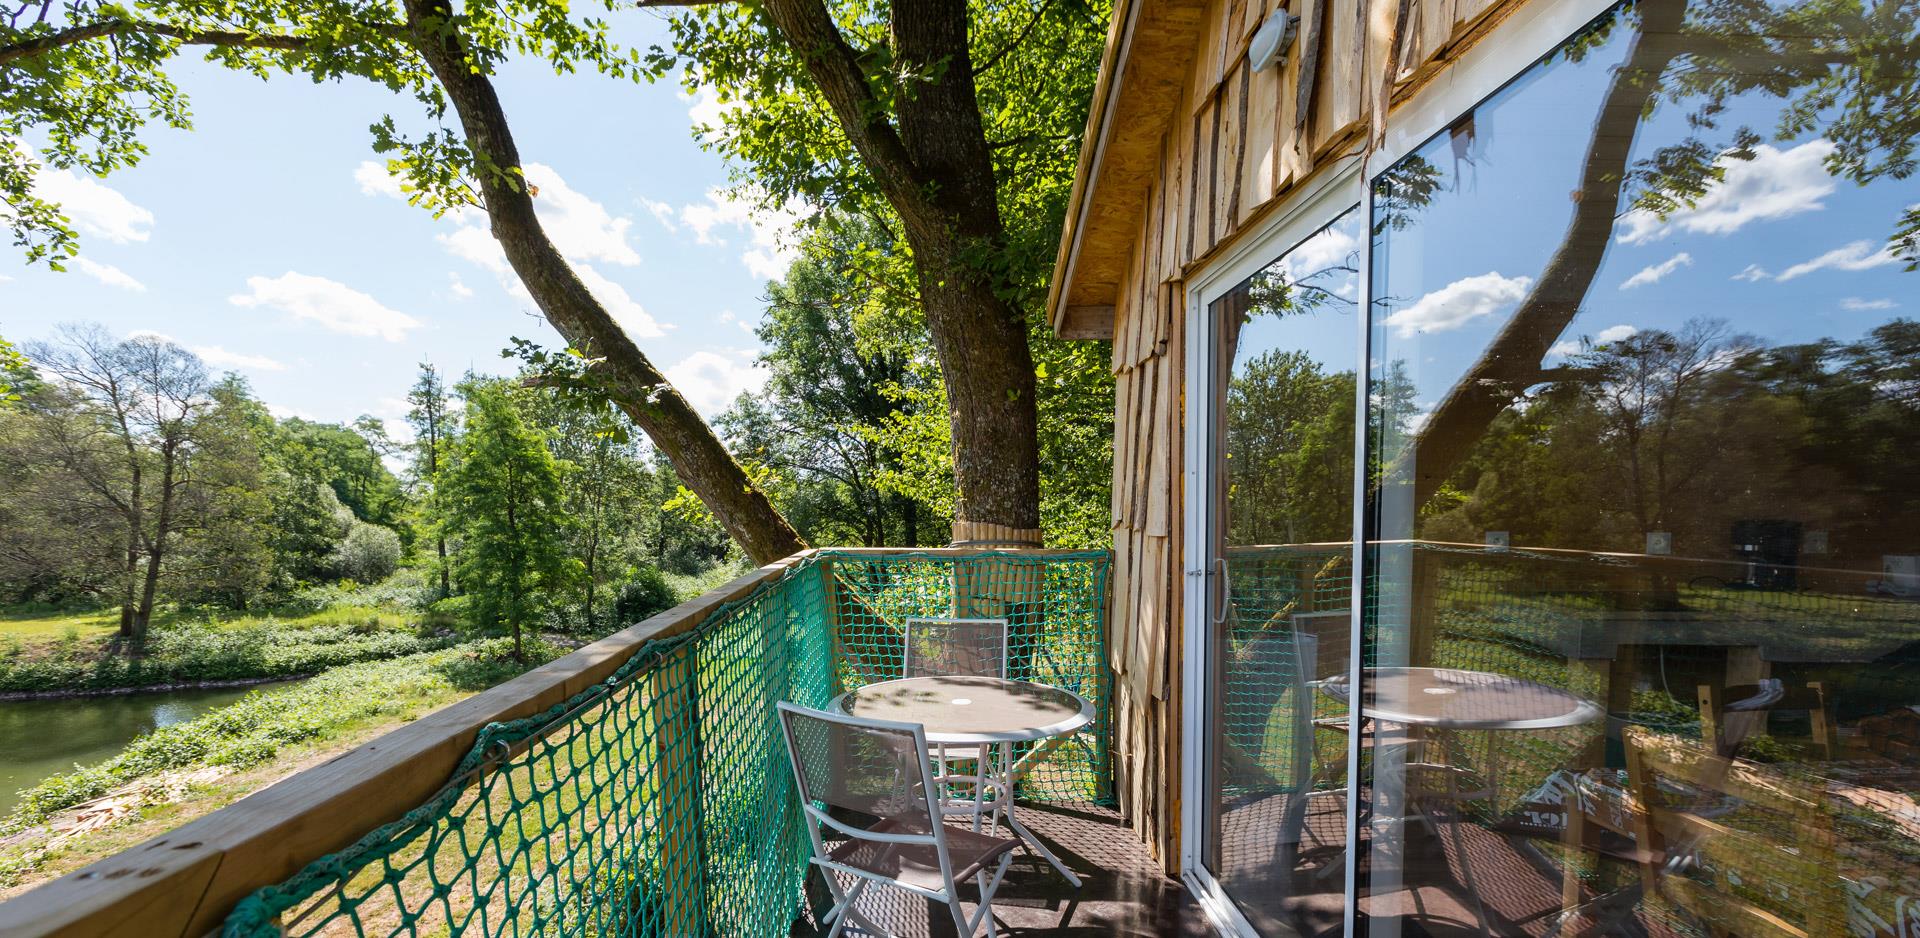 Die Sitzmöbel der hängenden Baumhütte Robin Hood, originelle Unterkunft im Departement Haut-Rhin auf dem Campingplatz Les Castors